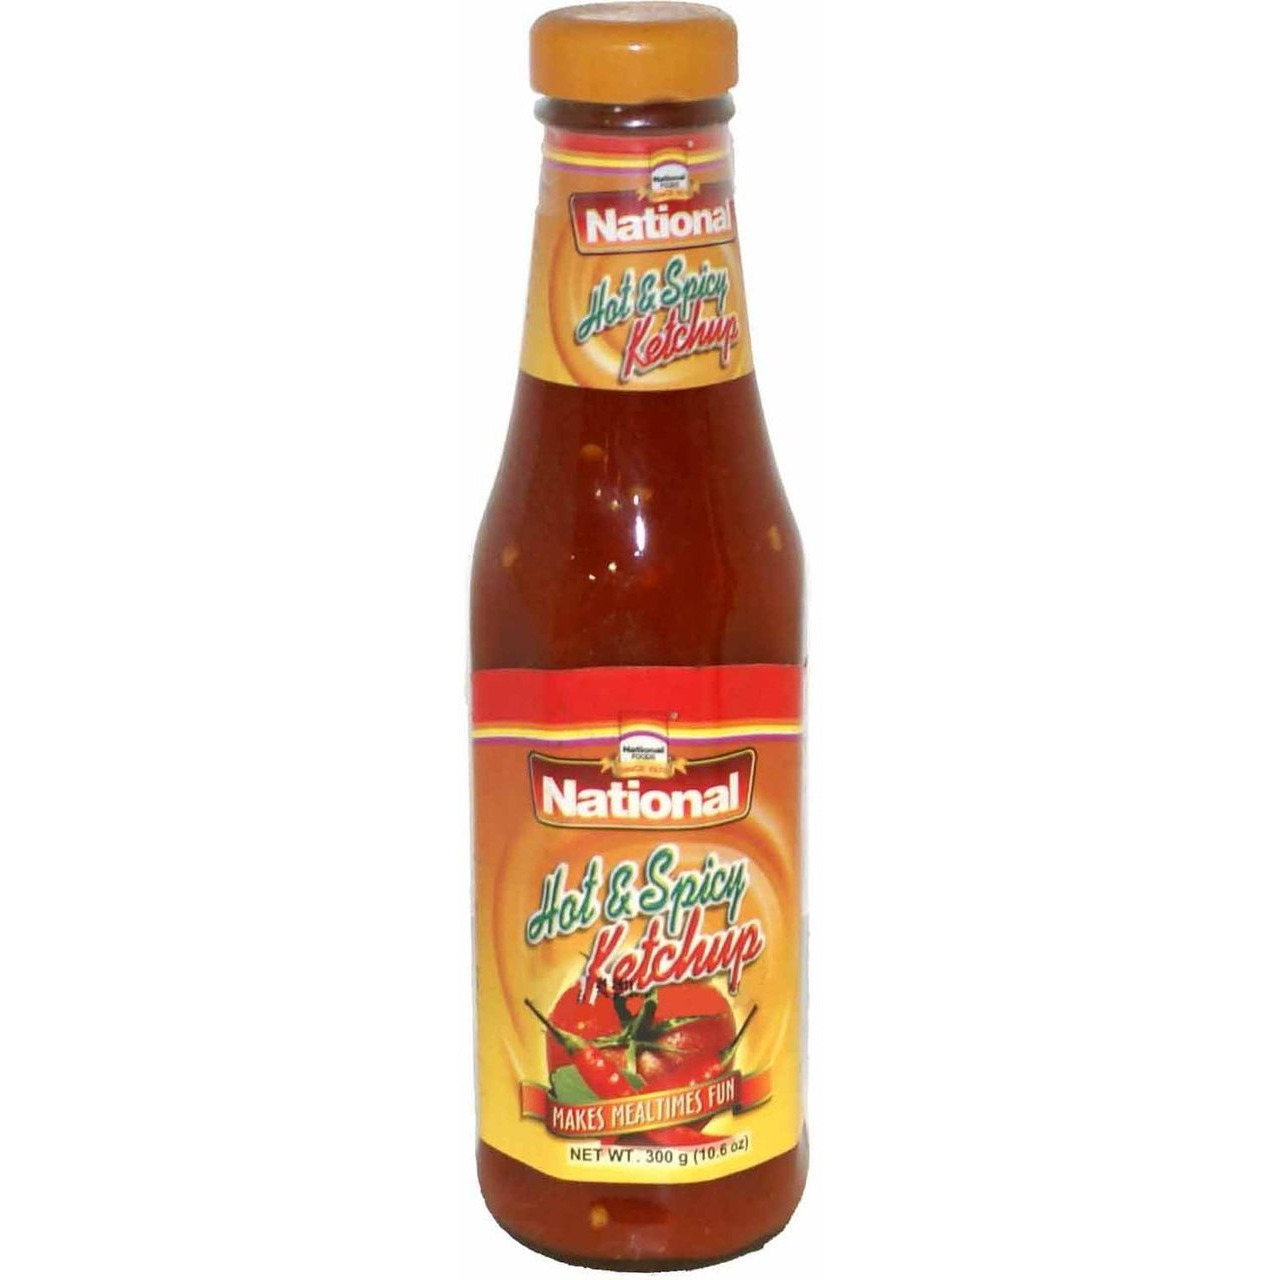 National Tomato Ketchup - 300 Gm (10.5 Oz)